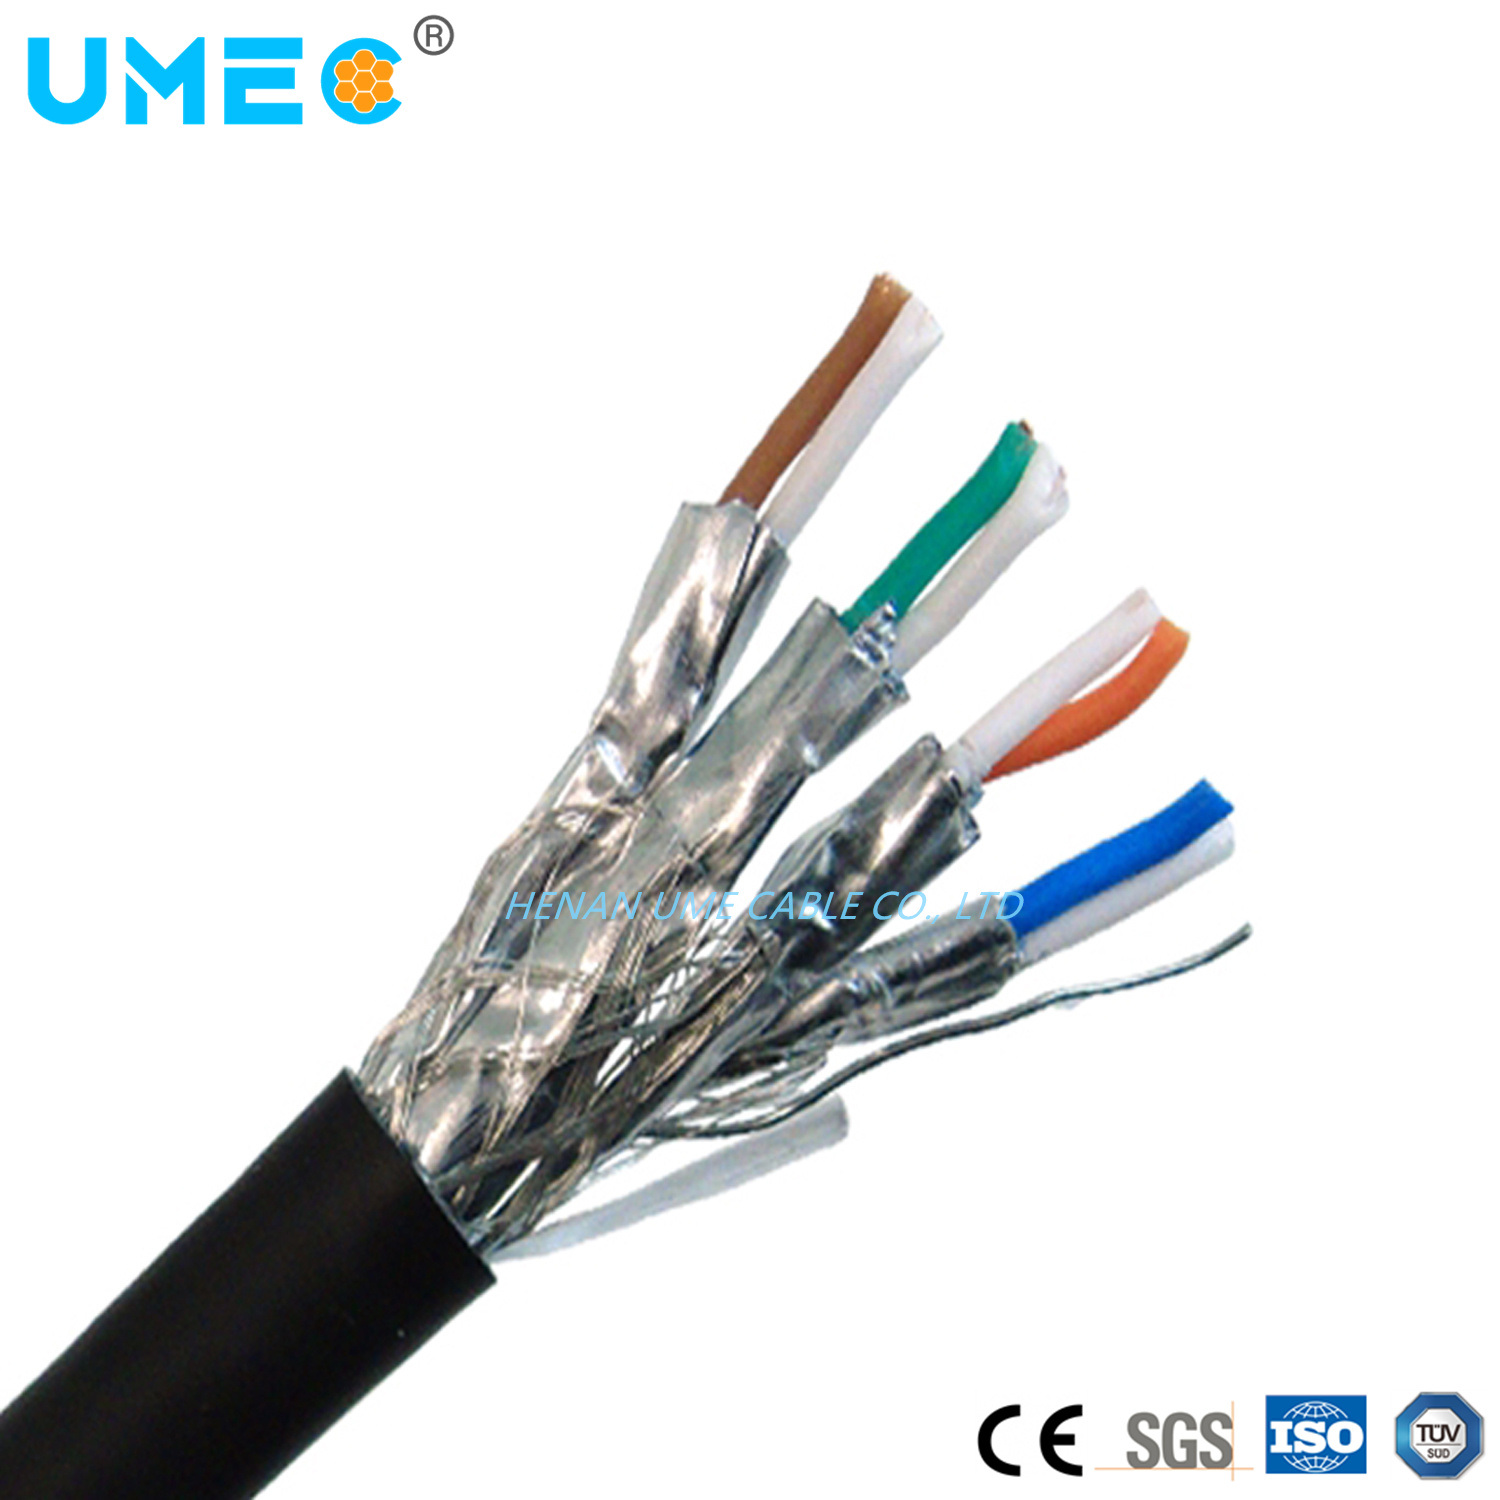 
                Щиток приборов кабель динамика BS стандартных компьютерных экранированный кабель кабель для системы DSC Djyvpr 2X1.5mm2
            